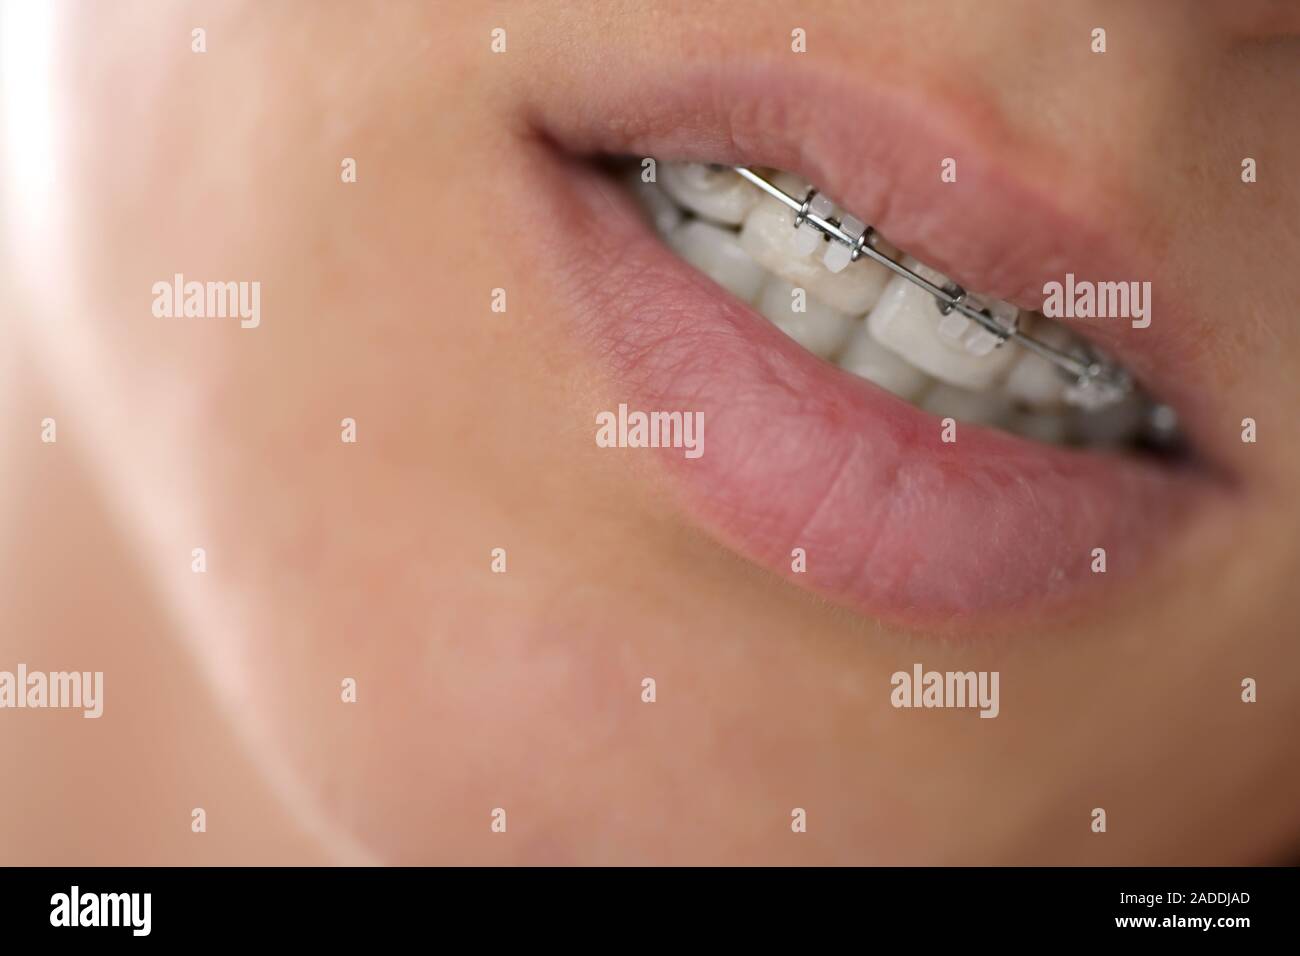 Sistema brasket in bocca sorridente, close-up labbra Foto Stock